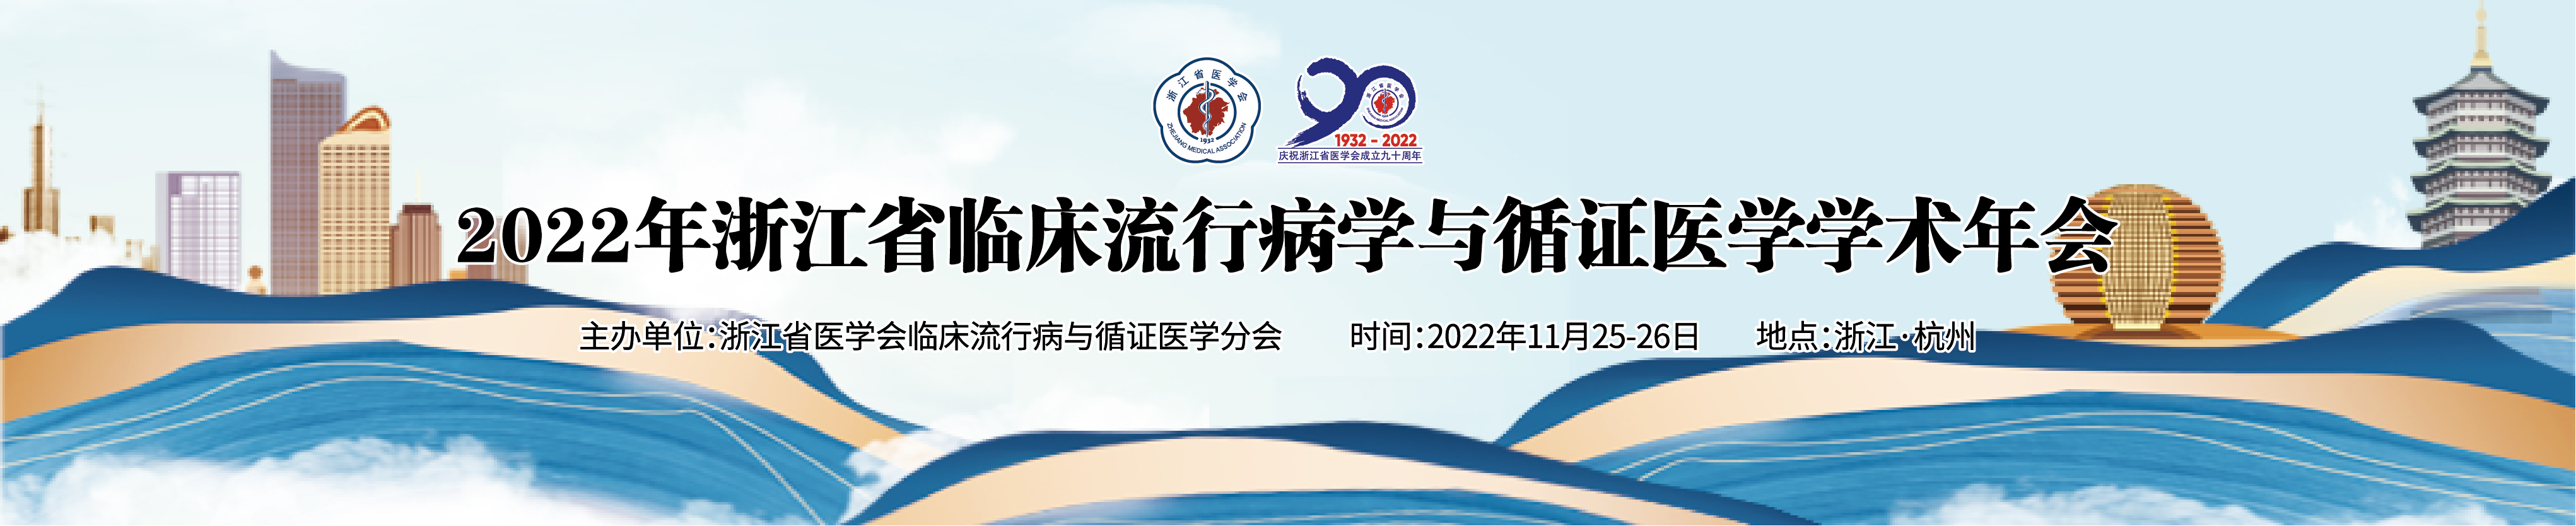 2022年浙江省临床流行病学与循证医学学术年会